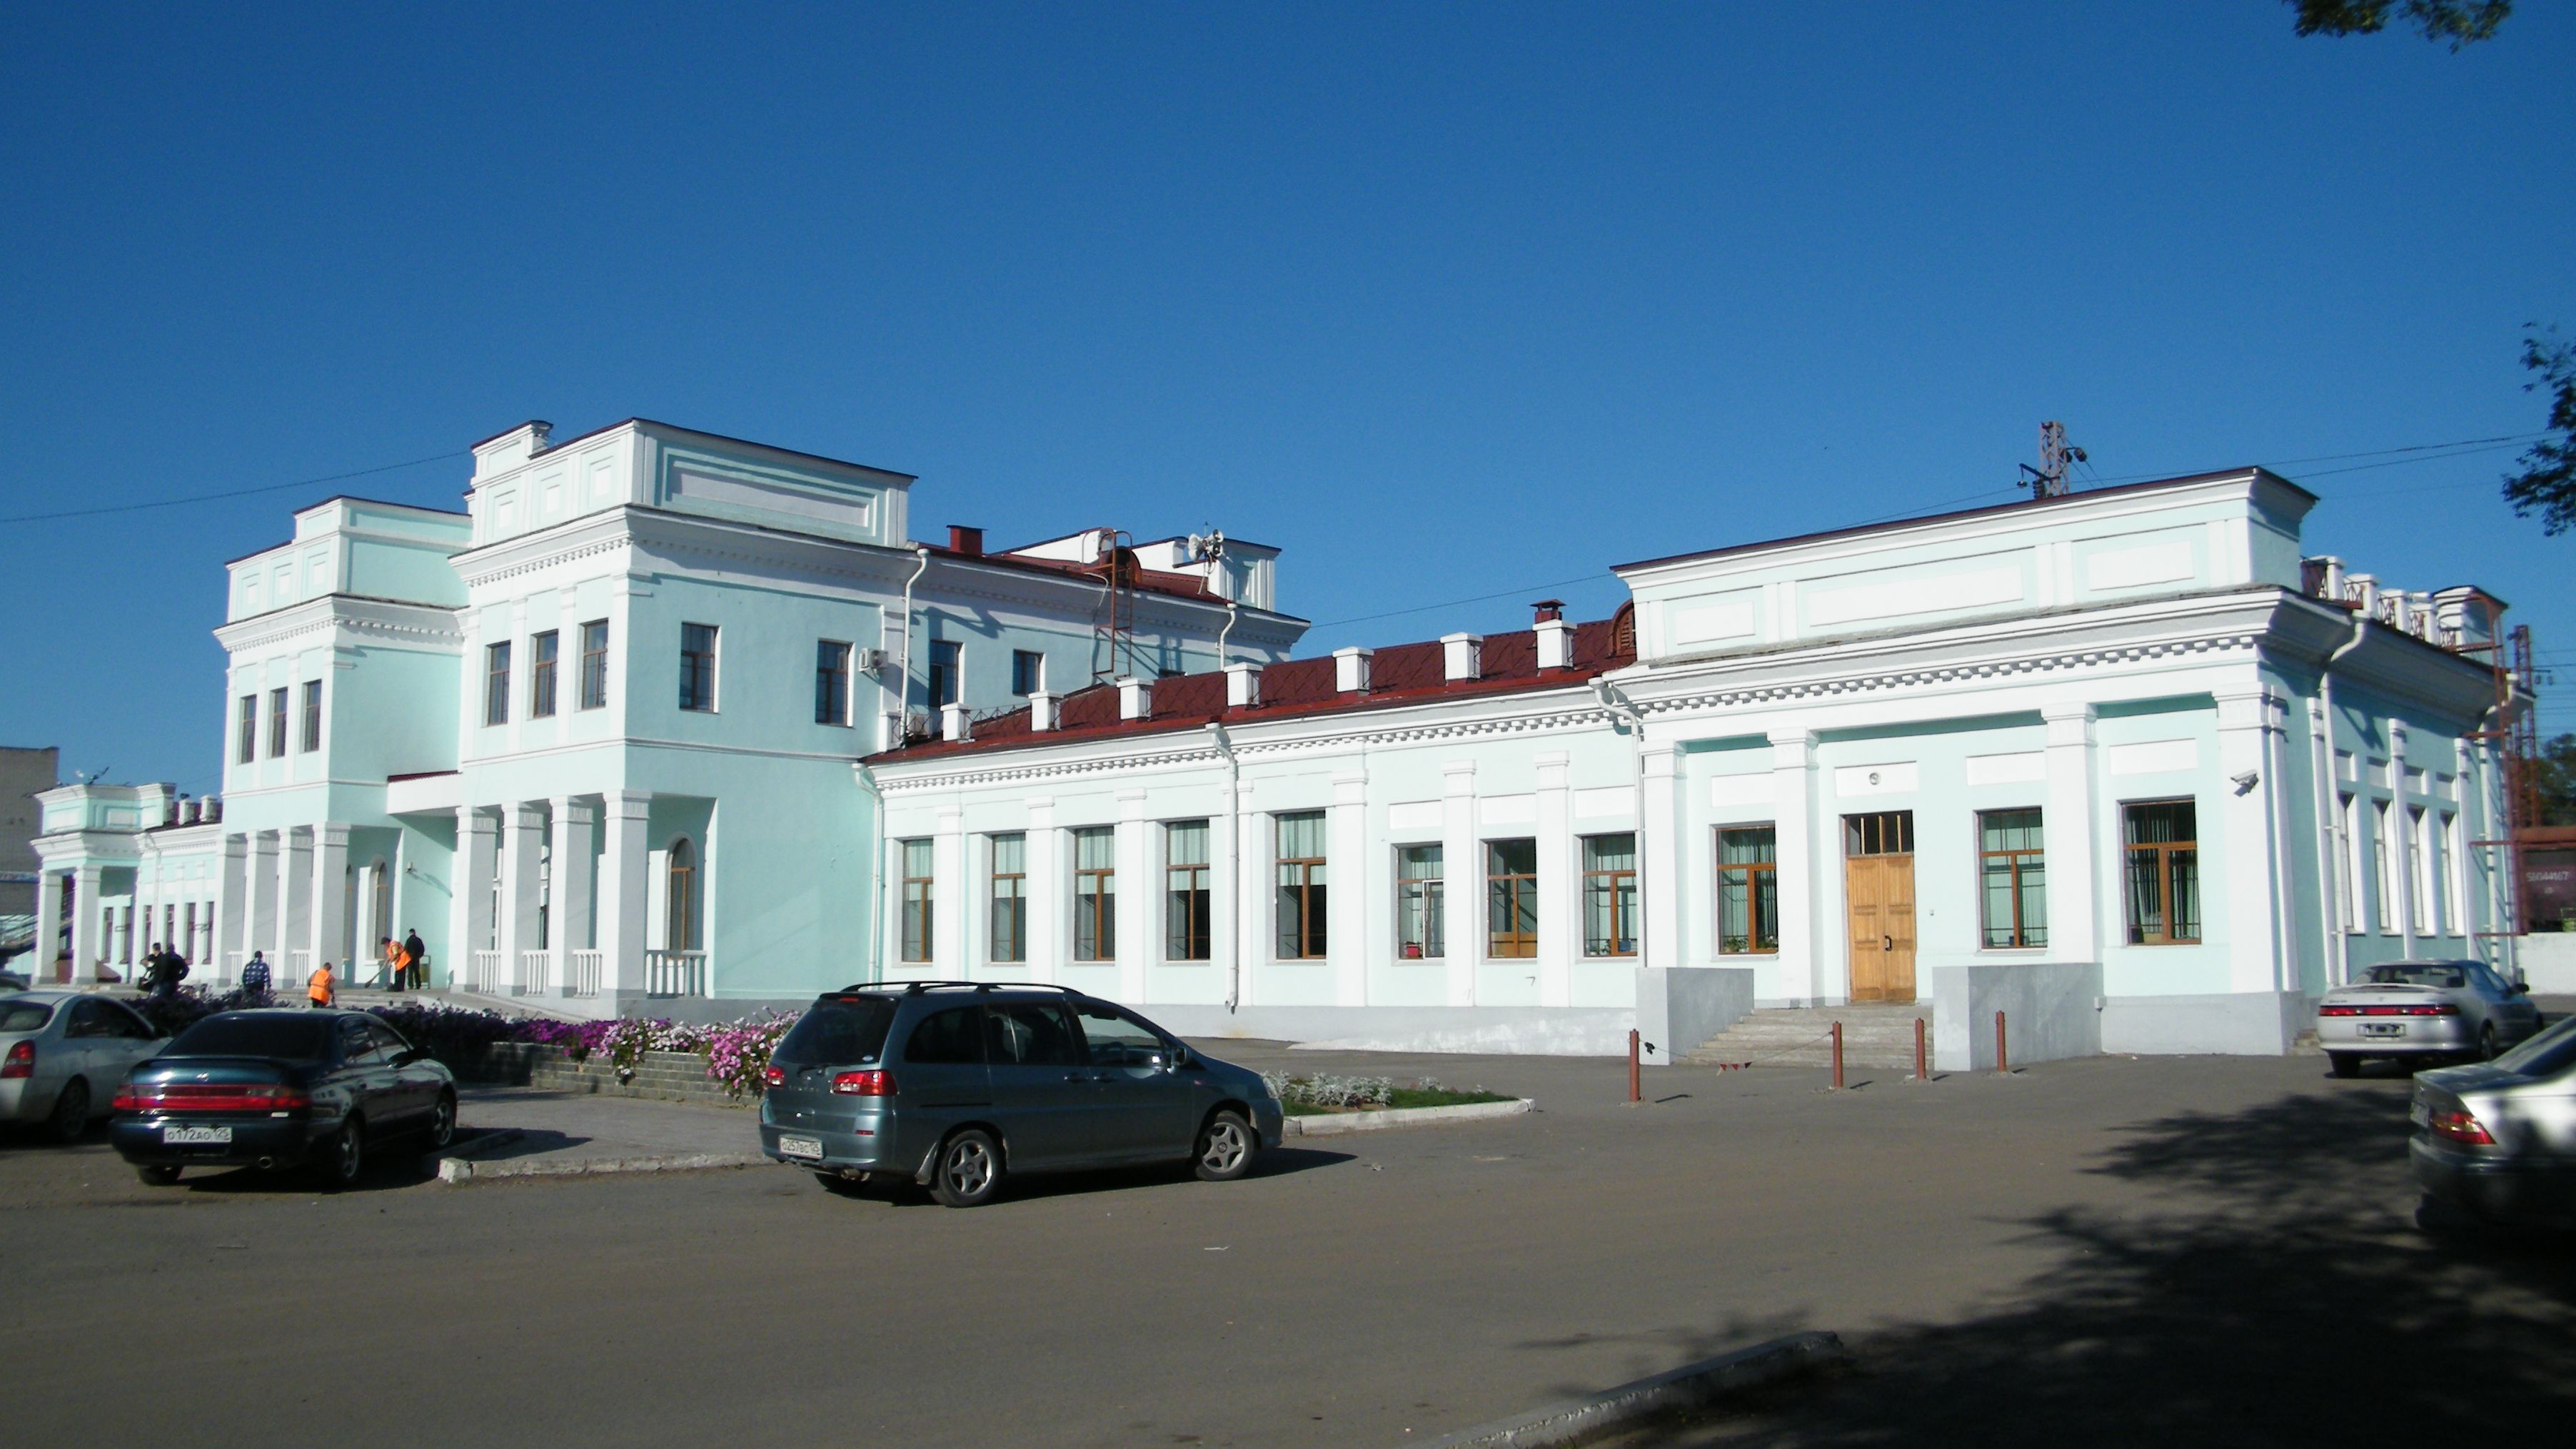 Спасск дальний жд вокзал